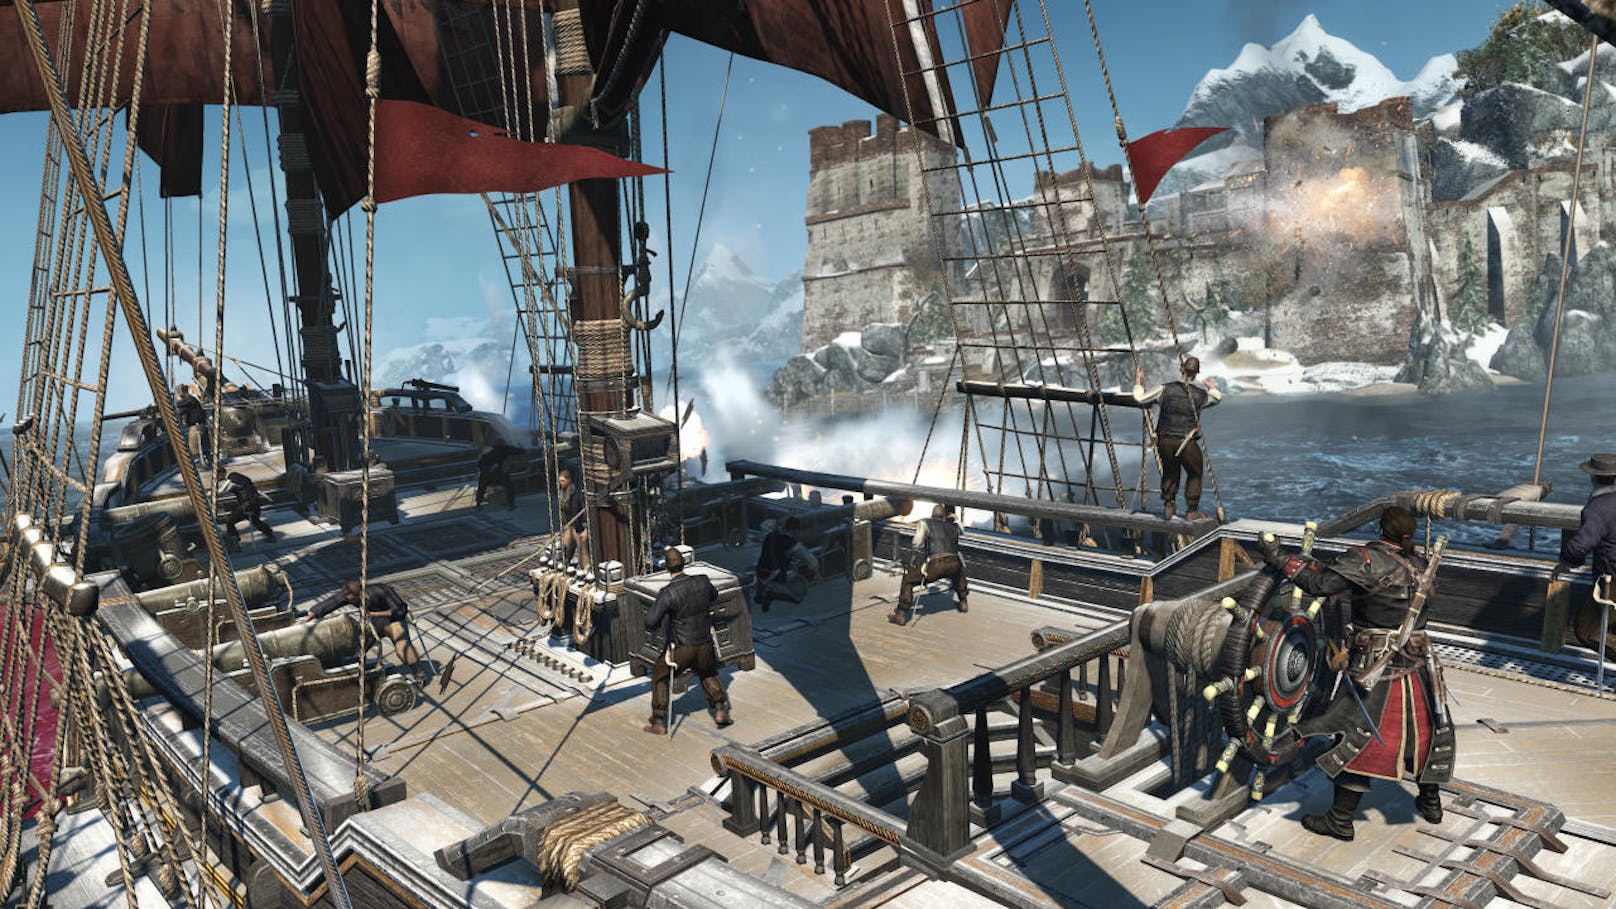 Nun bekommt das Spiel aber mit Assassin's Creed Rogue Remastered für PS4 und Xbox One eine zweite Chance - und nutzt diese, auch wenn es nicht allzu lange her ist, dass die Aufmerksamkeit der neueste Teil Origins für sich gepachtet hatte.